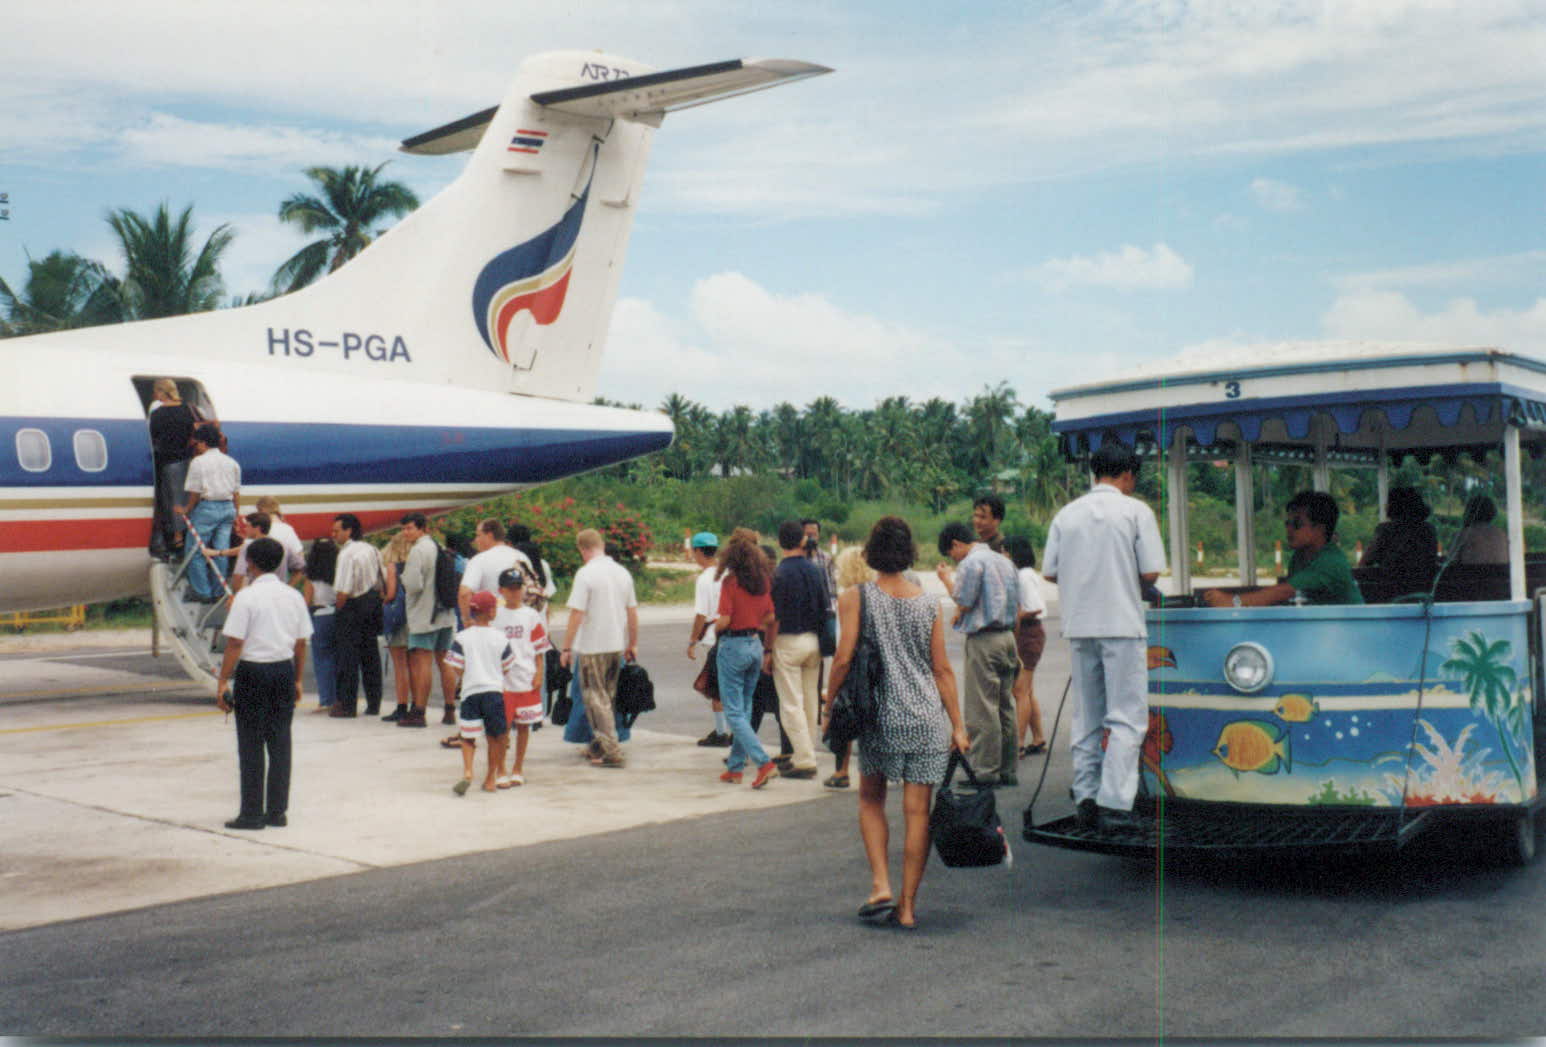 Thailand 1995